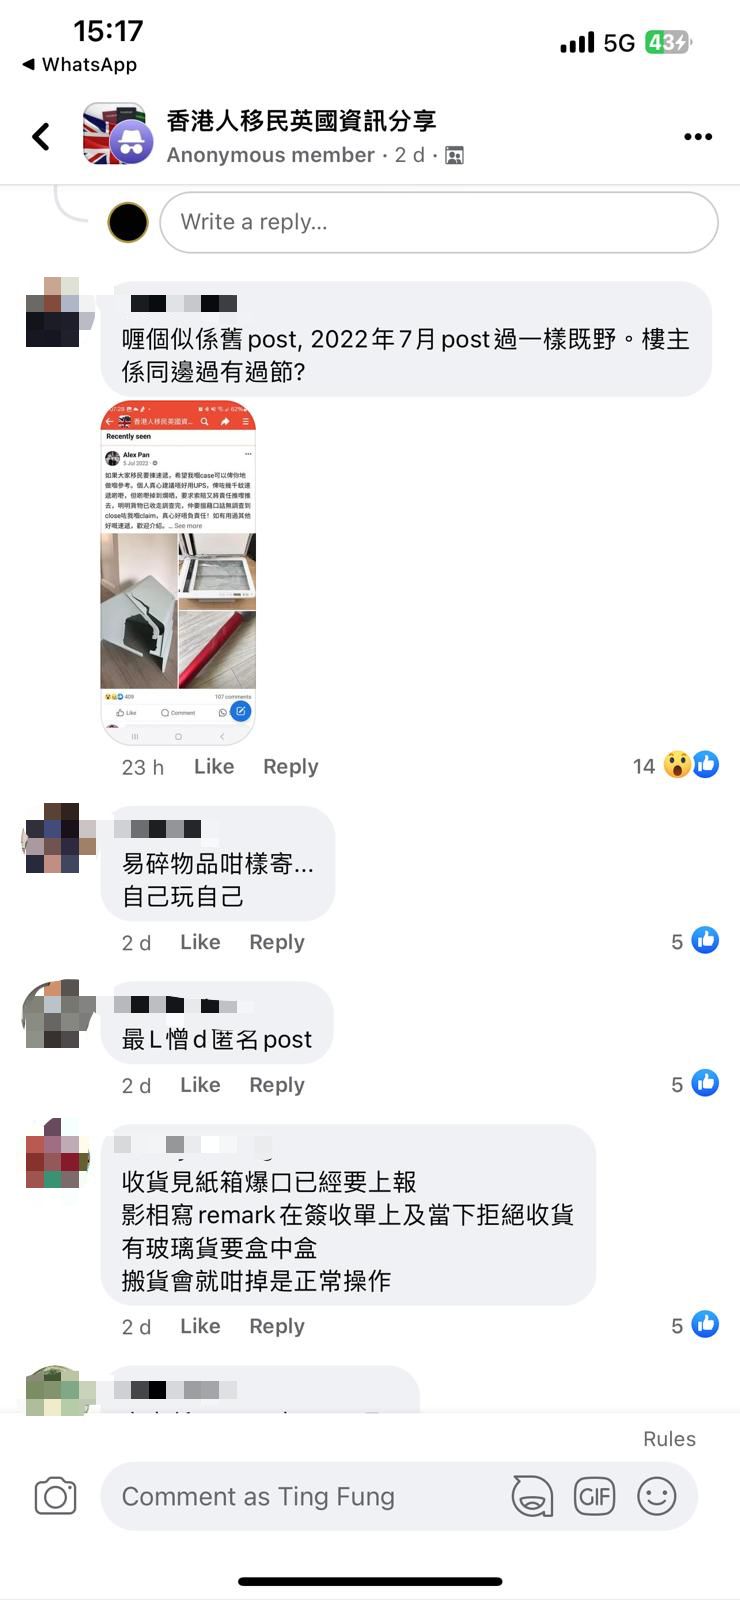 有网民表示若收货时发现纸箱爆胶口亦应拍照留记录（图片来源：Facebook@香港人移民英国资讯分享）